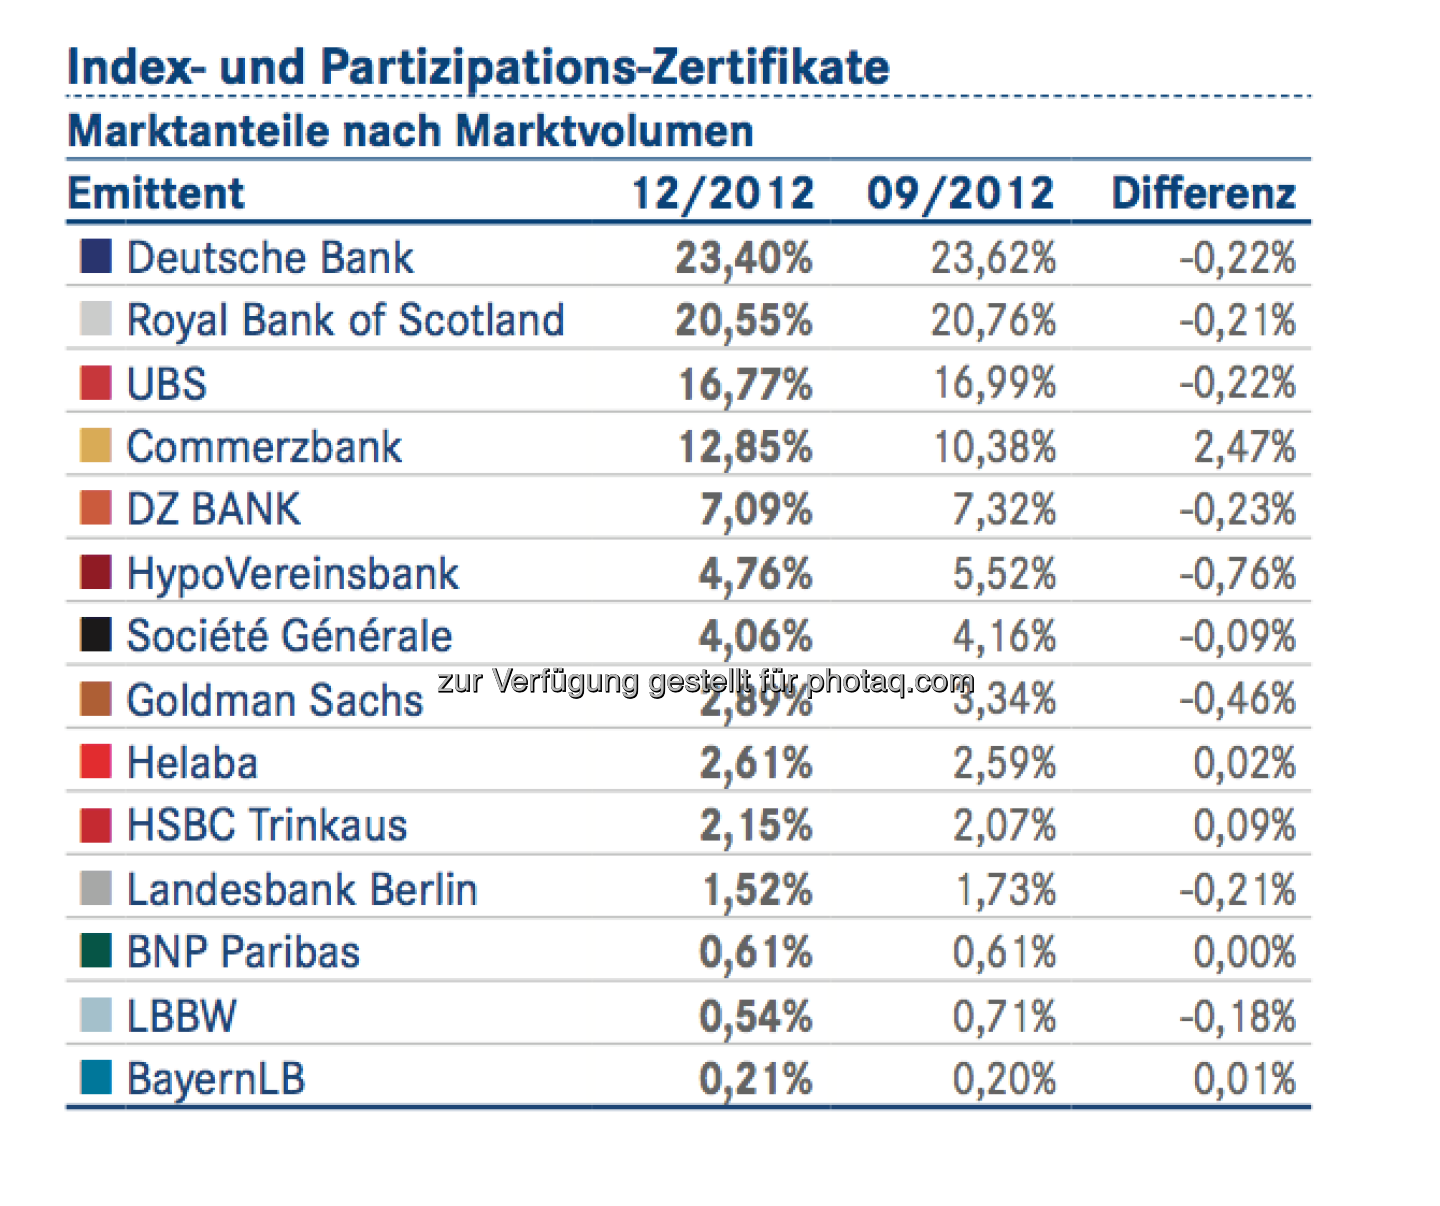 DDV-Statistik Ende 2012: Deutsche Bank bei Index- und Partizipations-Zertifikaten vorne